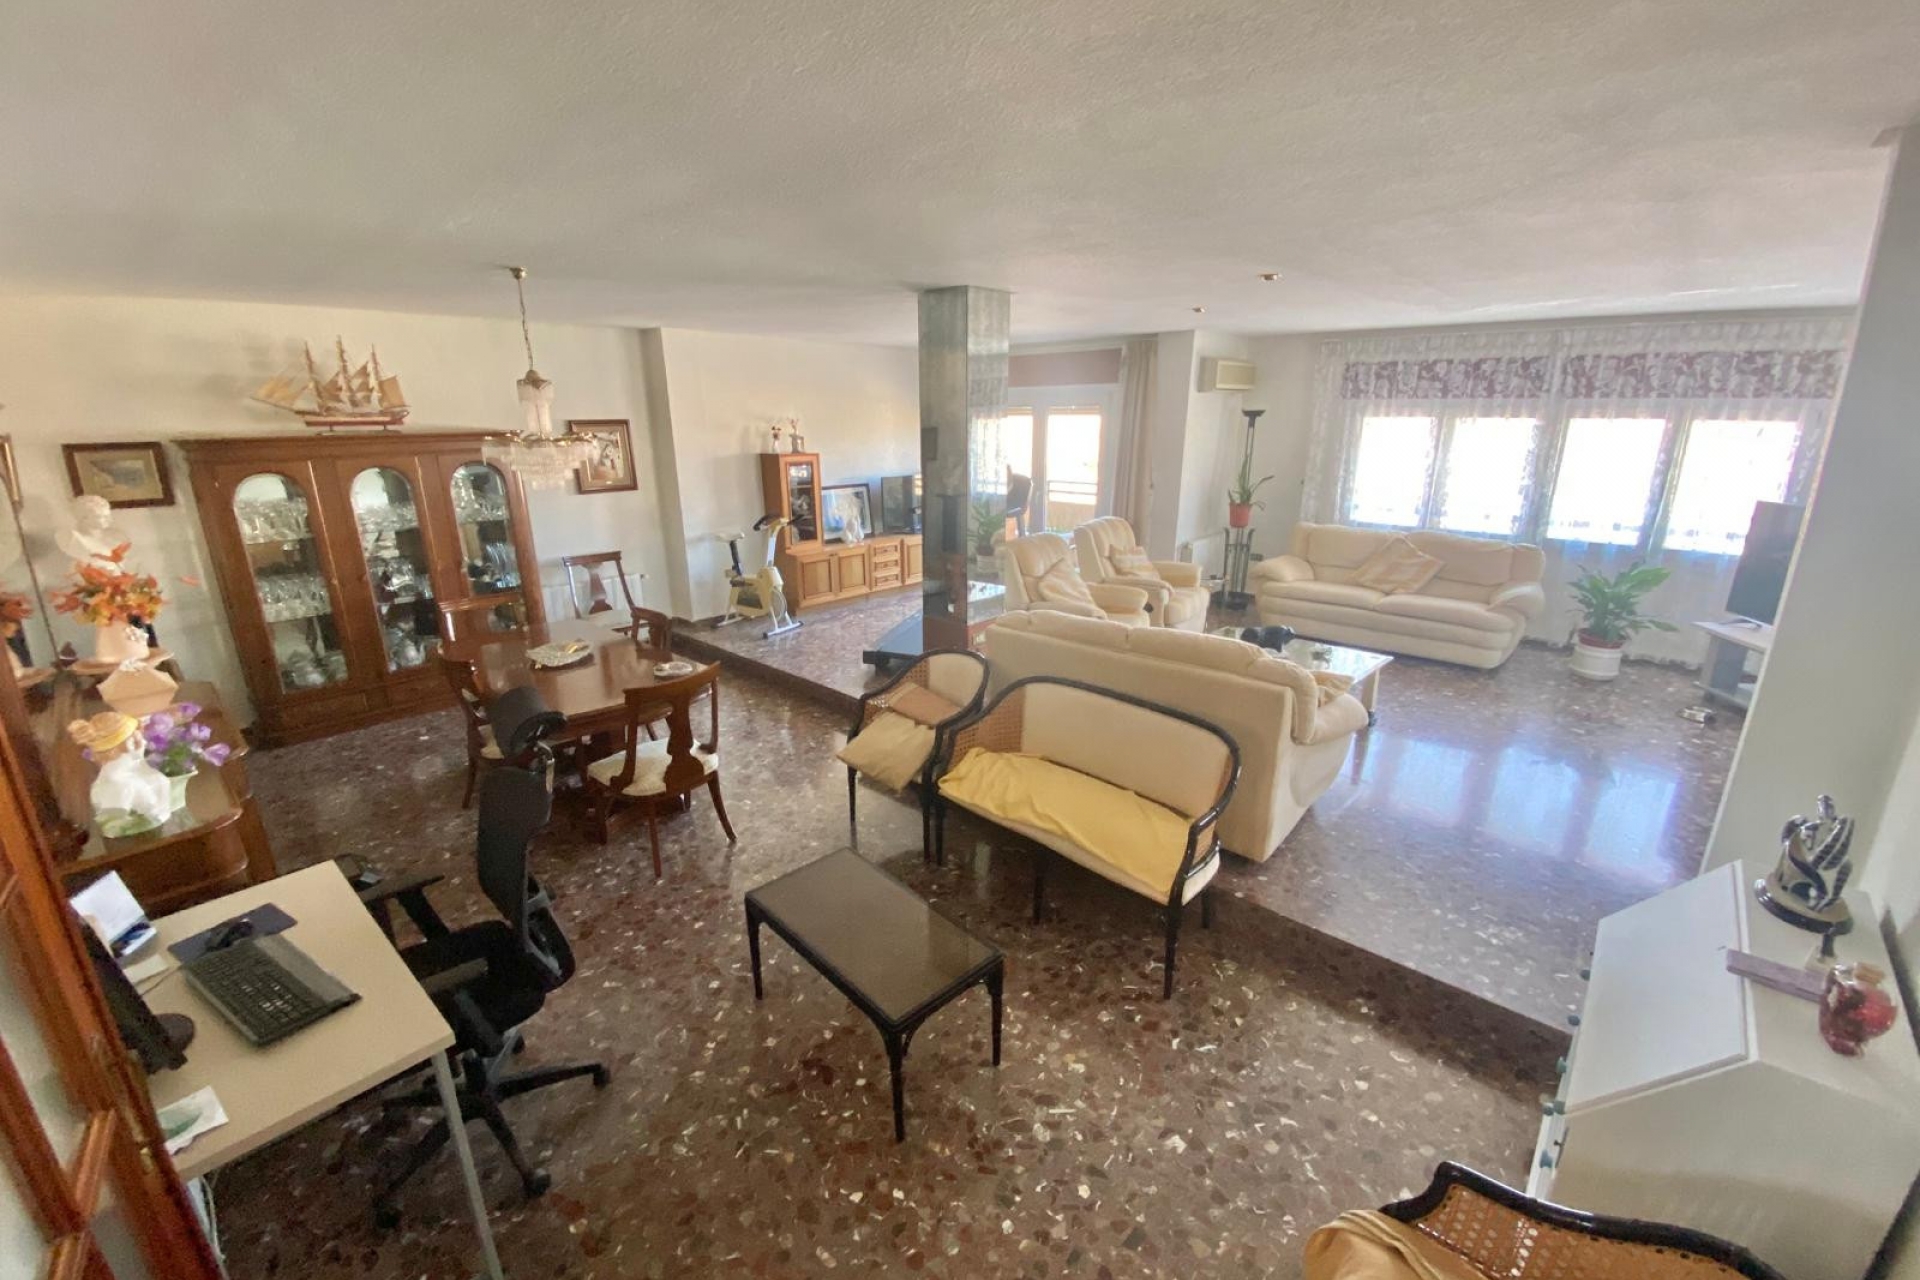 Property for sale - Duplex for sale - La Palma